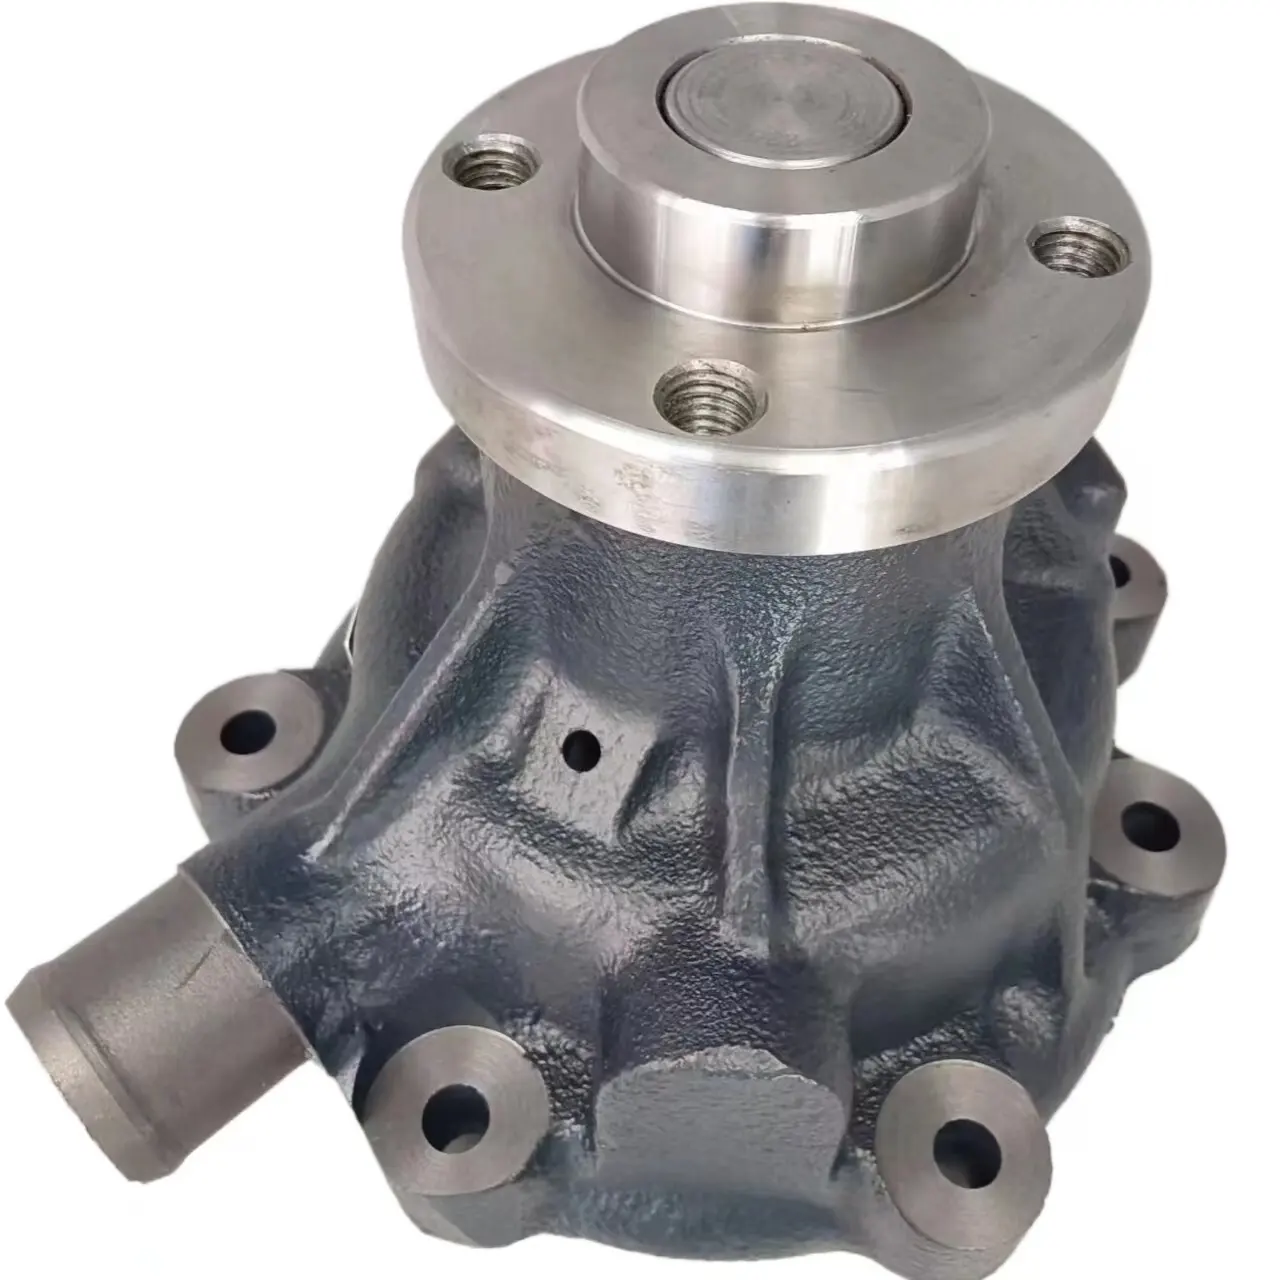 Orijinal Weichai motor yedek parça WP6 motor parçaları su pompası meclisi 13055430 çeşitli Weichai motor modelleri için kullanılır